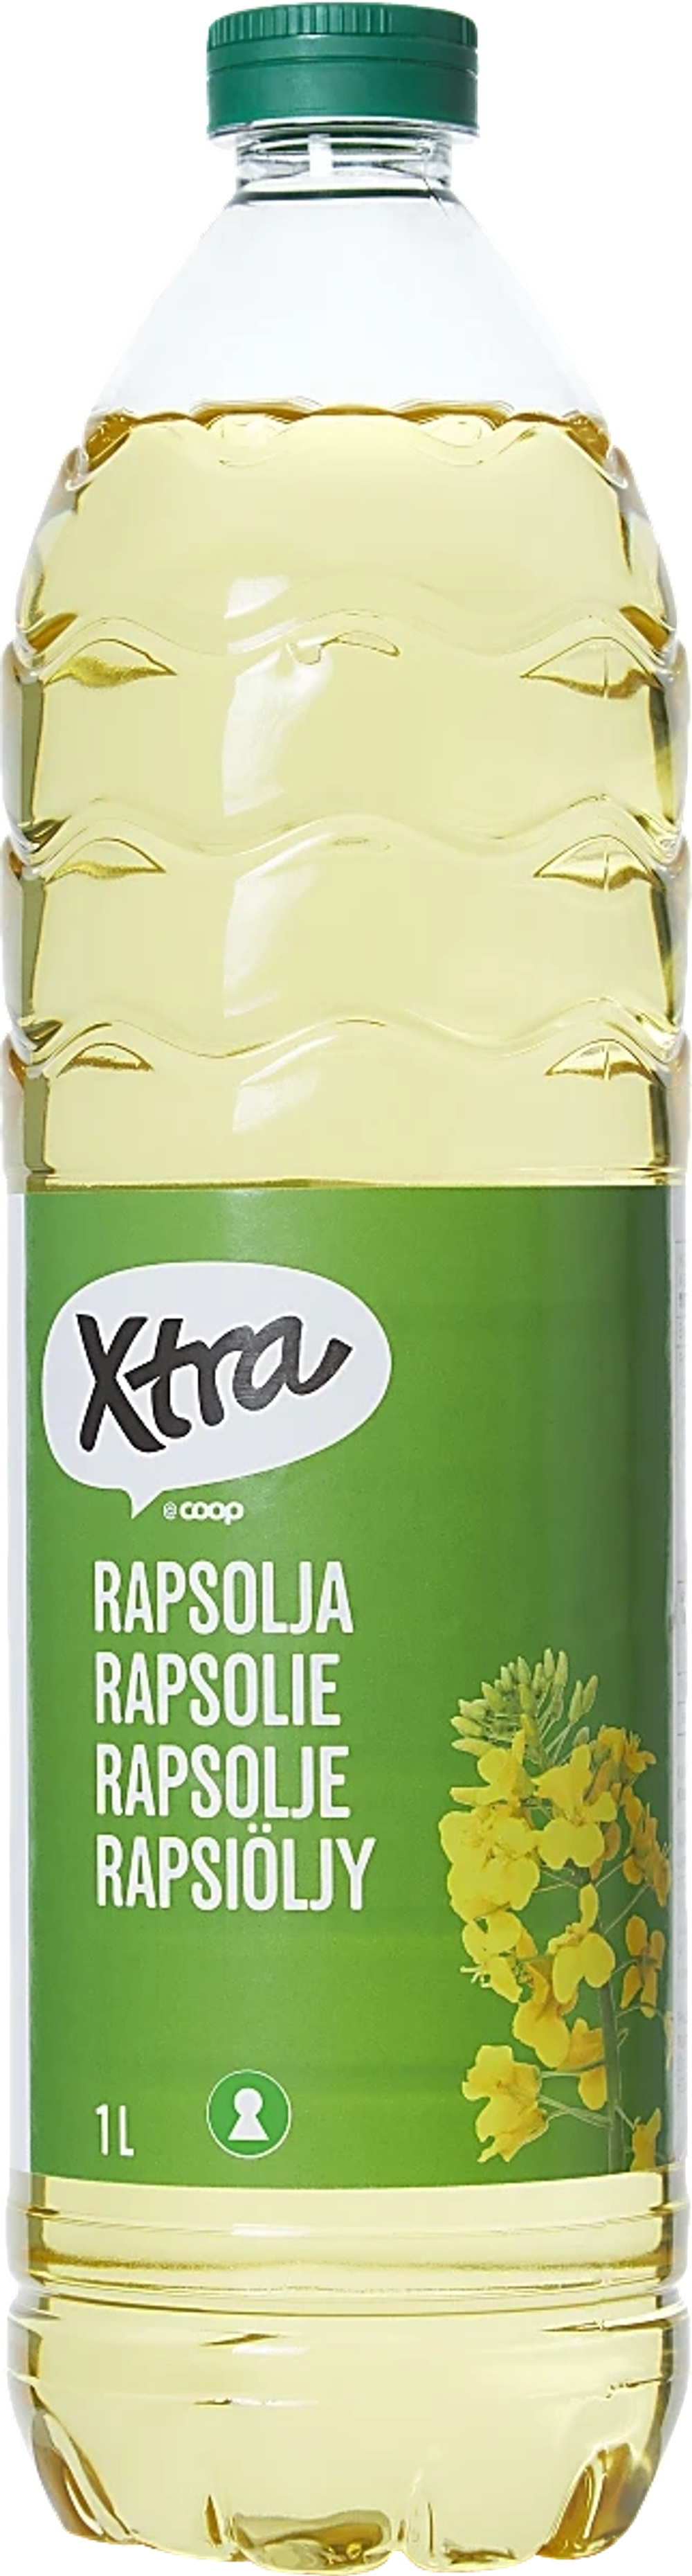 Erbjudanden på Rapsolja (Xtra) från Coop X:-TRA för 19,90 kr